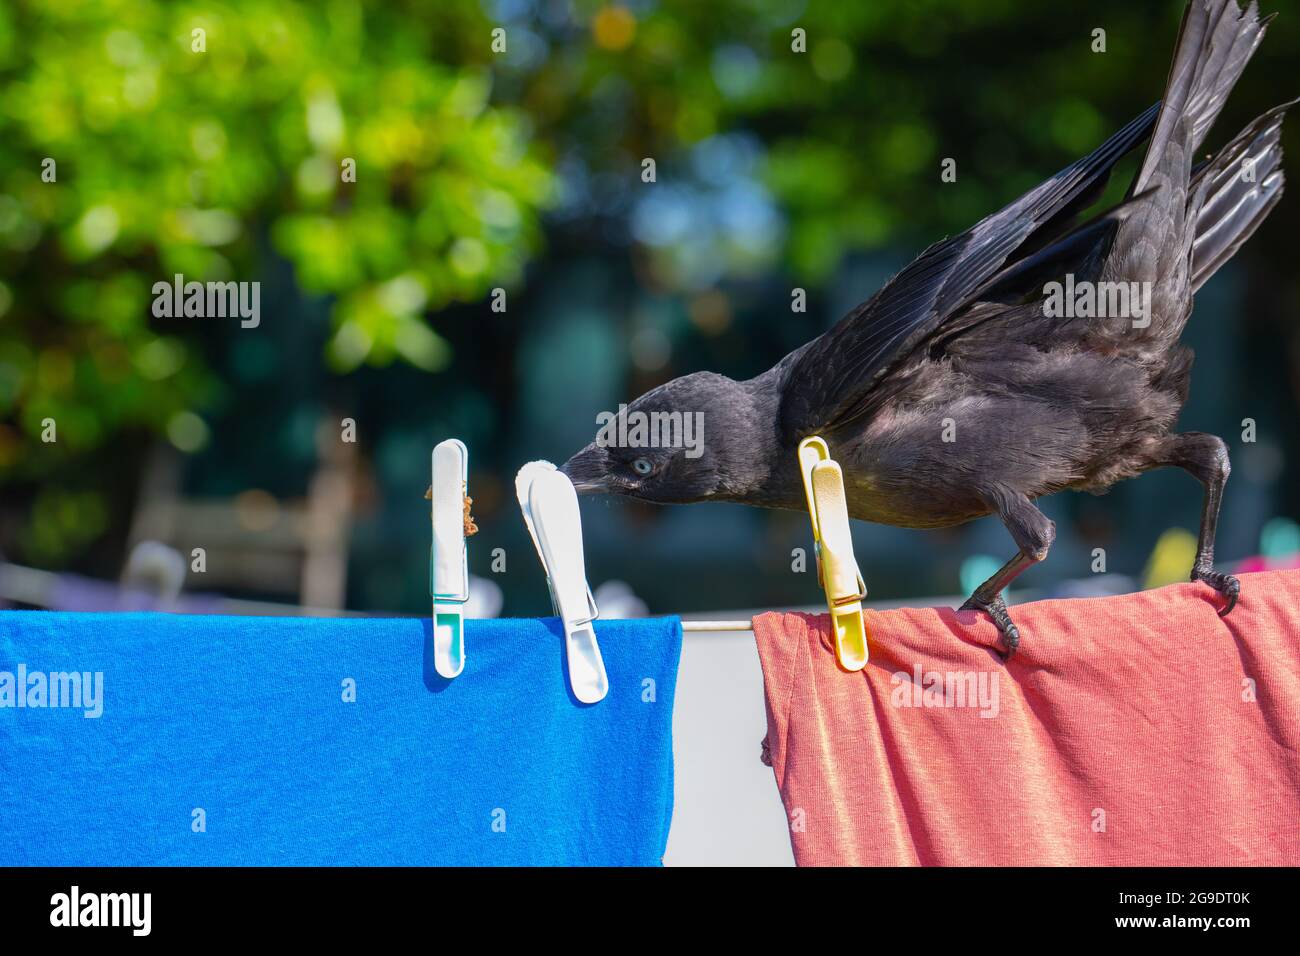 Dohlen (Corvus monedula). Jugendlich. Jungfling. Junger Vogel. Barschen an einer Wäscheleine selektiv untersucht plastikfarbene Stifte, halten Tuch Stockfoto